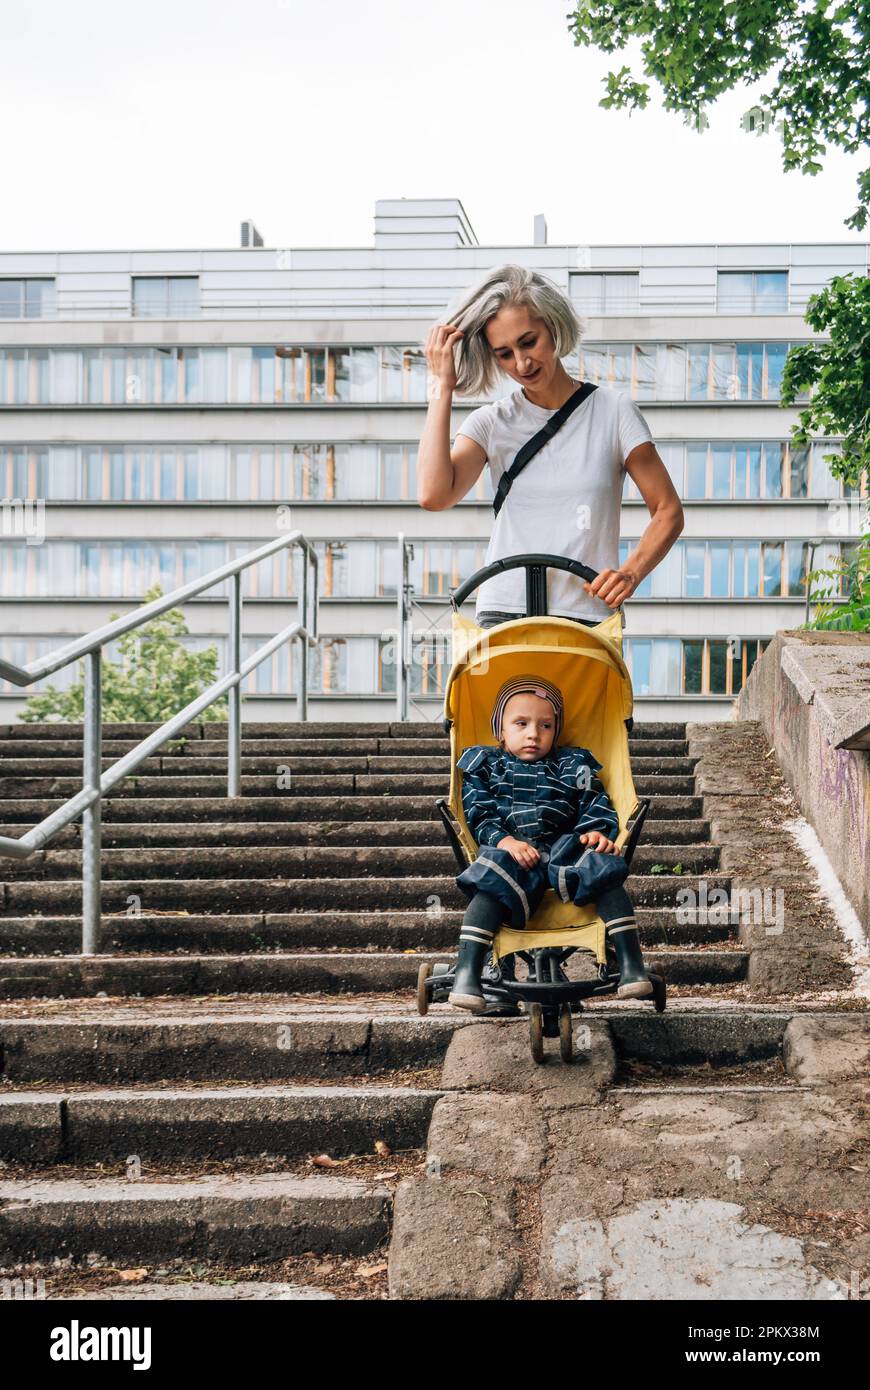 Une femme roule une poussette avec un enfant sur la rampe des escaliers Banque D'Images